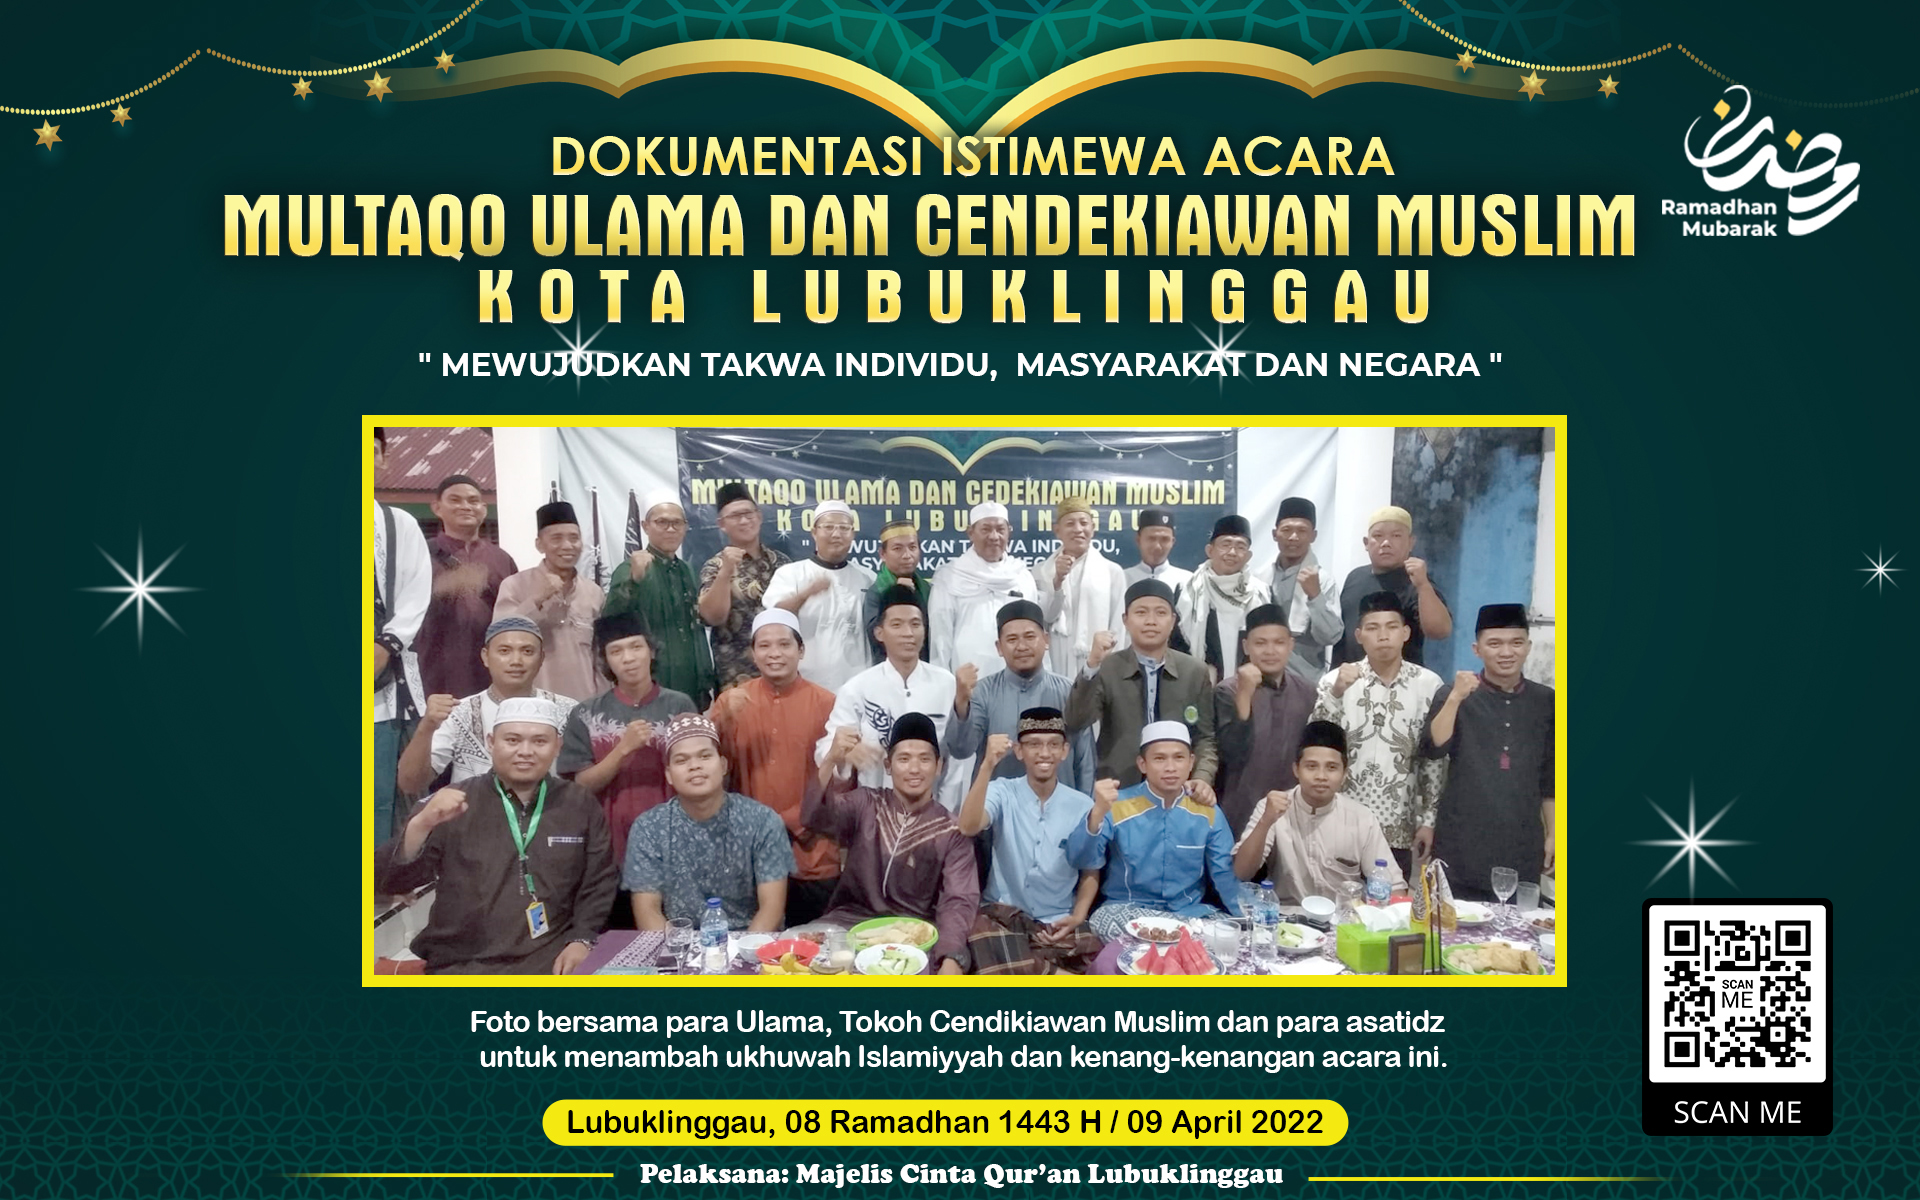 Multaqo Ulama dan Cendekiawan Muslim Kota Lubuklinggau: Mewujudkan Takwa individu, Masyarakat dan Negara